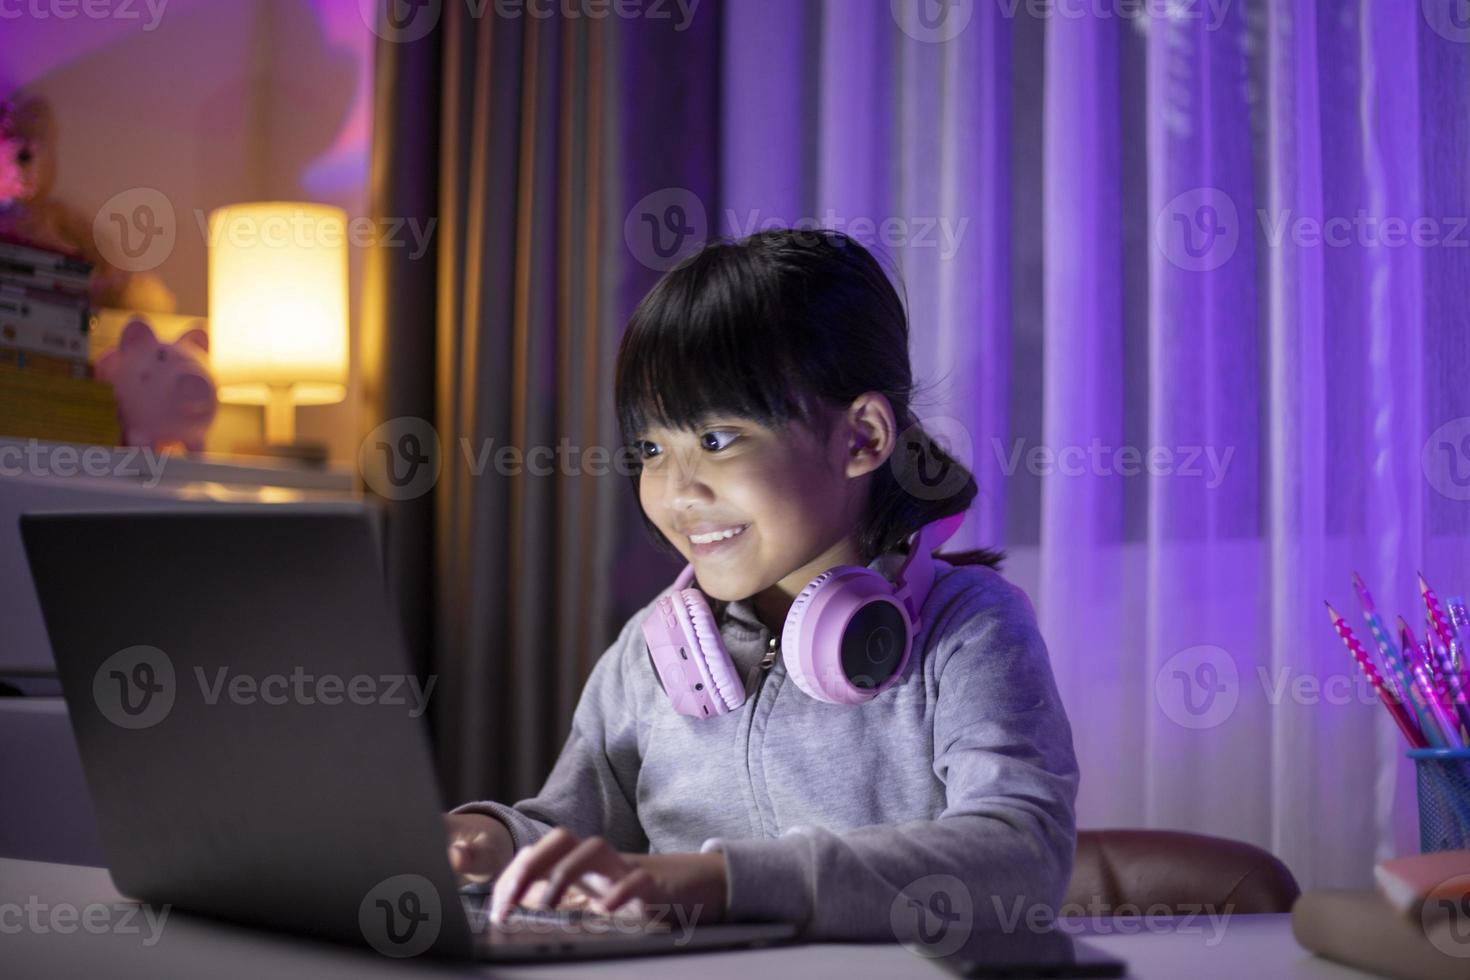 streamer de garota asiática jogando videogame com expressão de vencedor na sala de jogos. foto